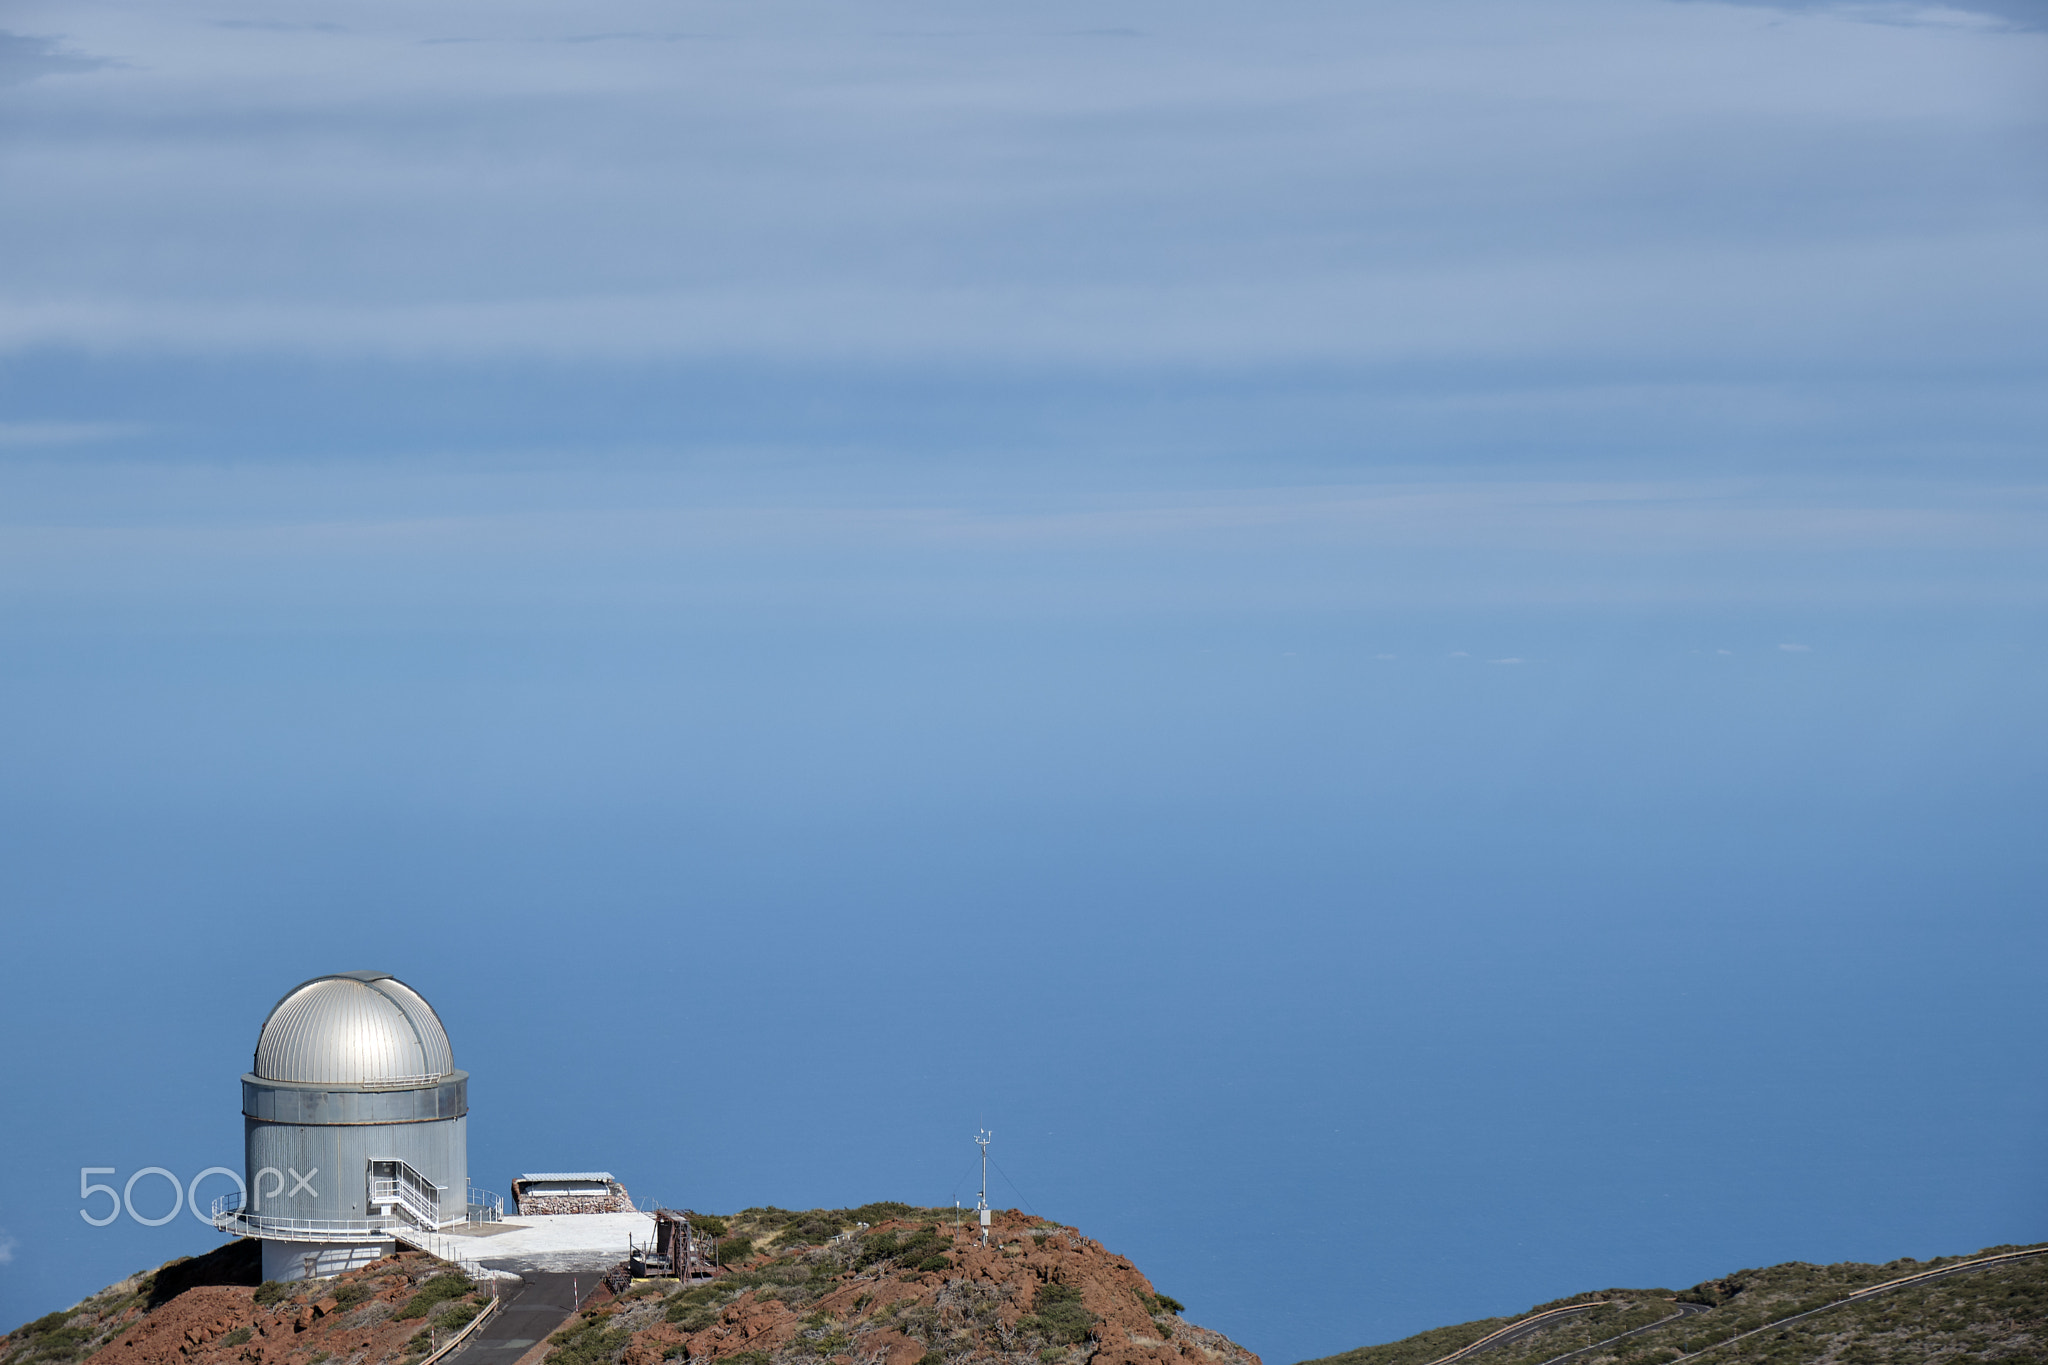 La Palma los muchachos observatory